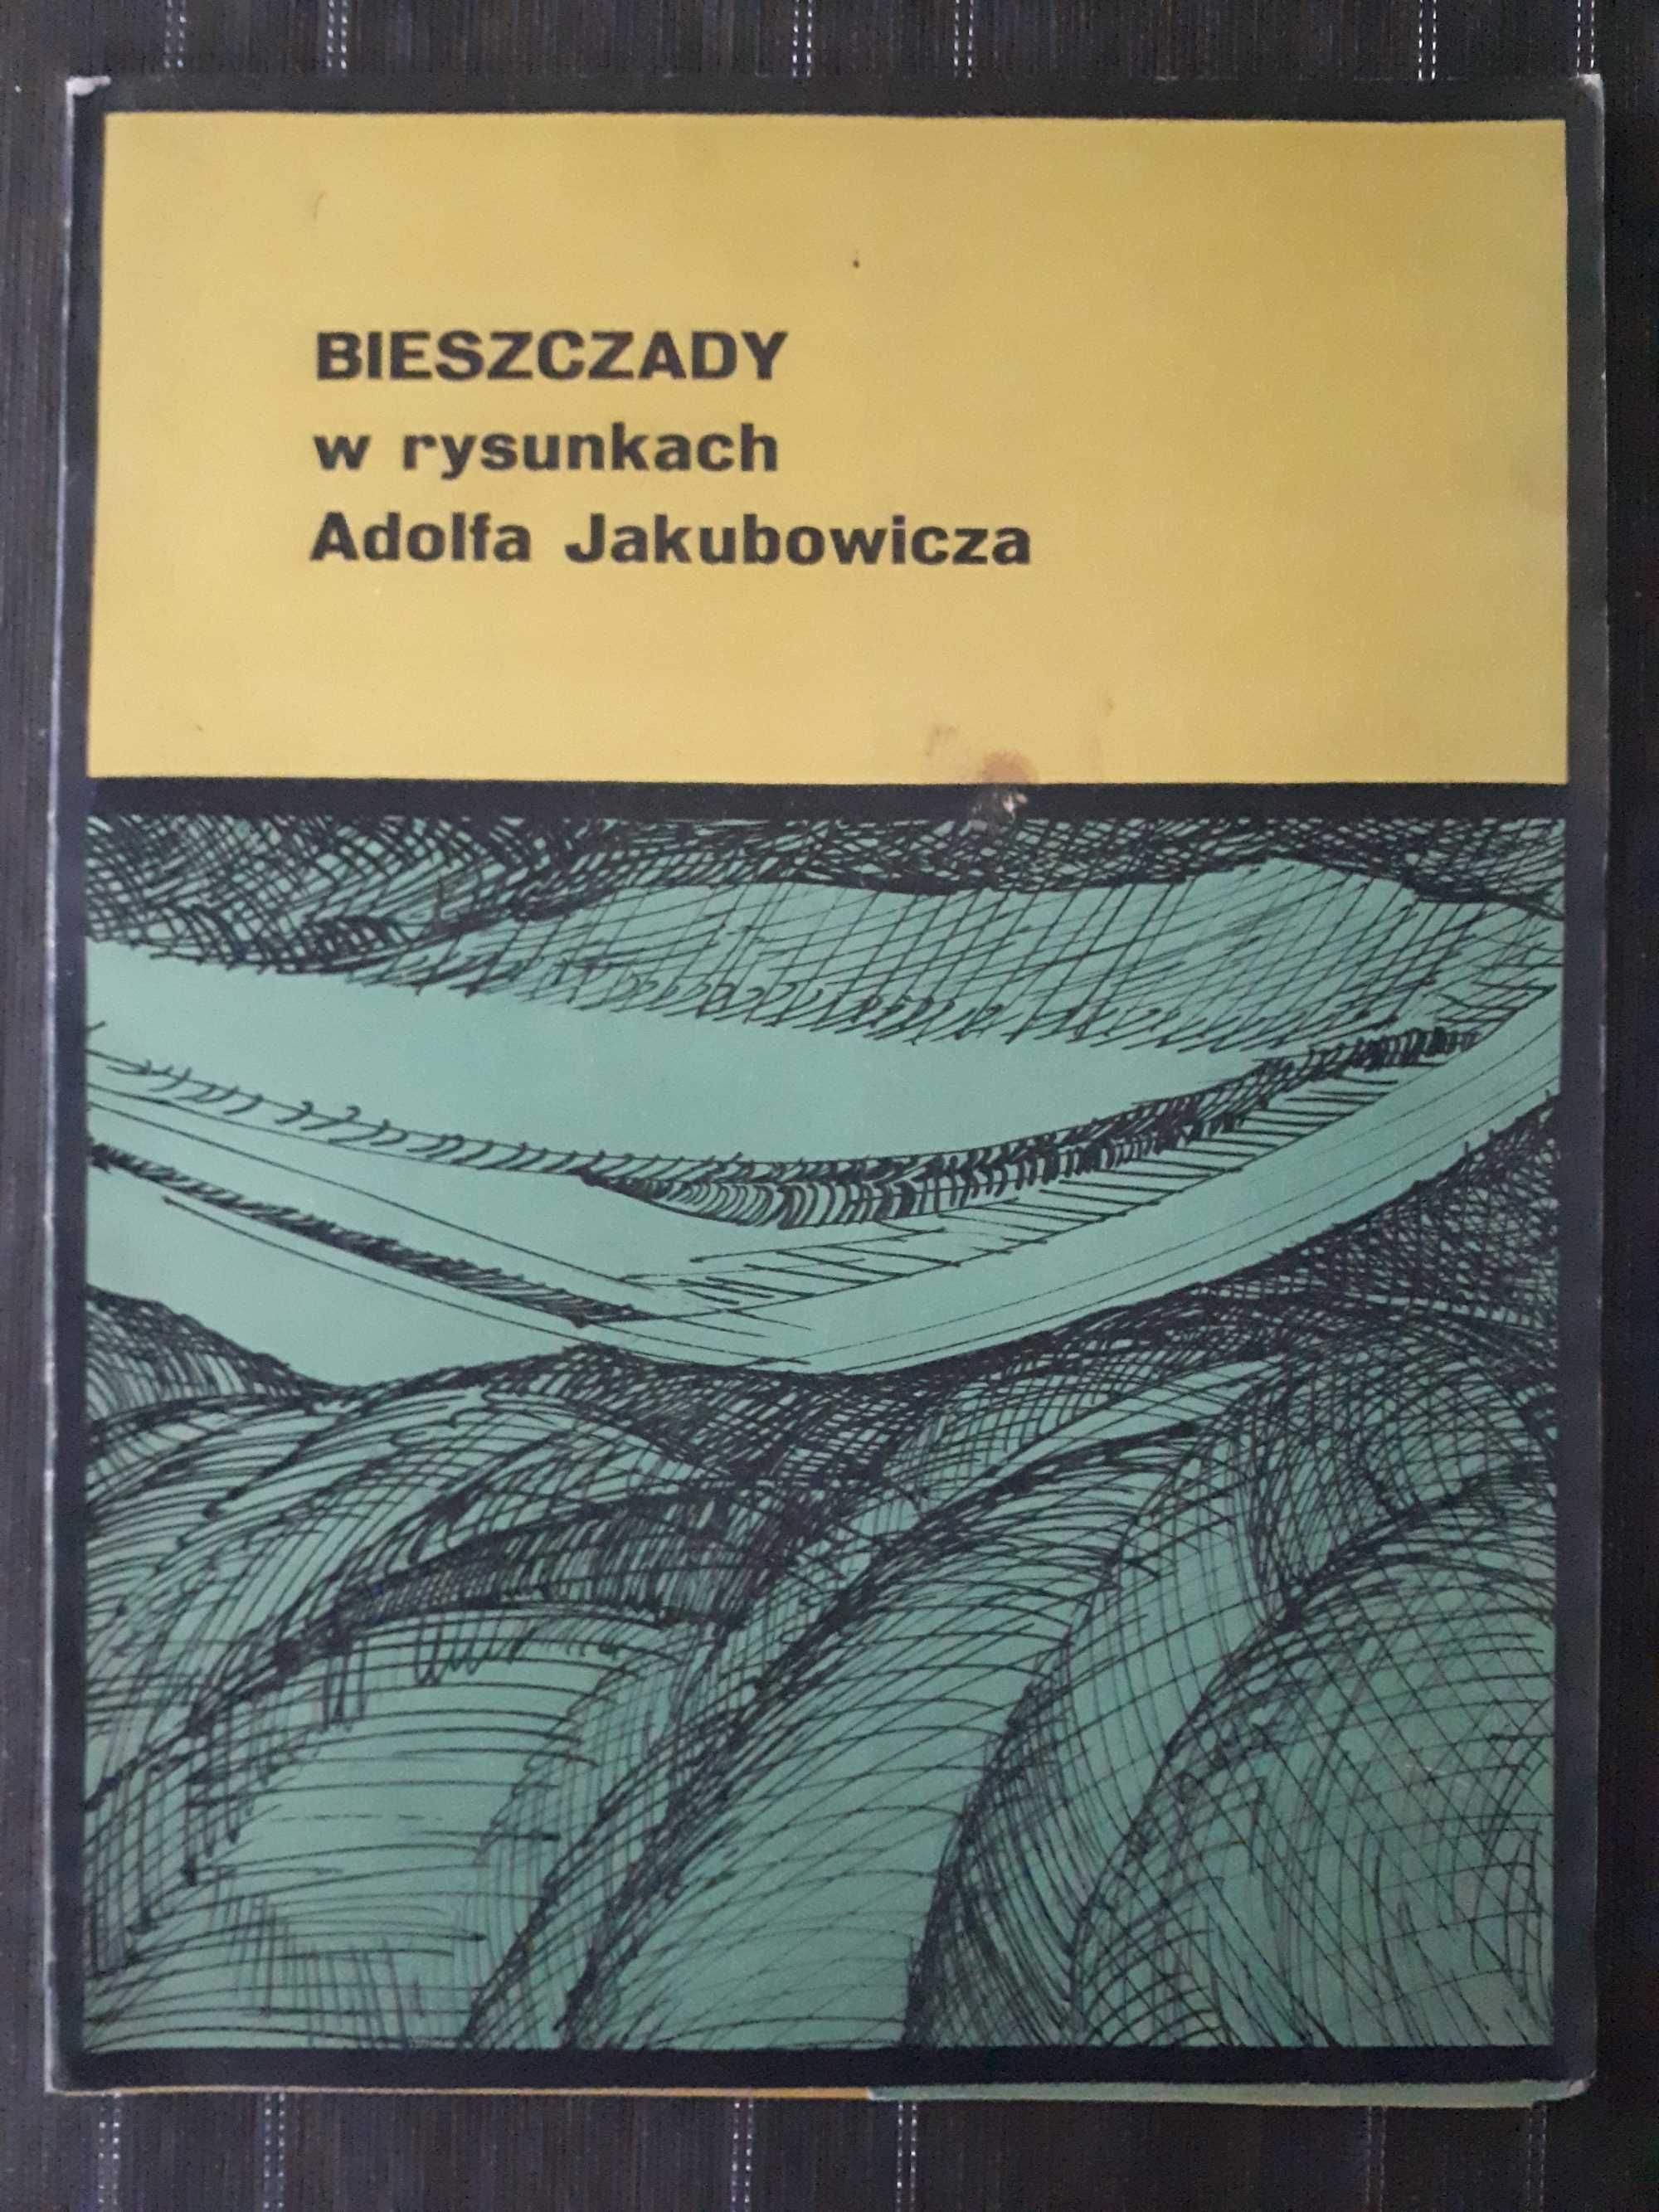 BIESZCZADY w rysunkach Adolfa Jakubowicza